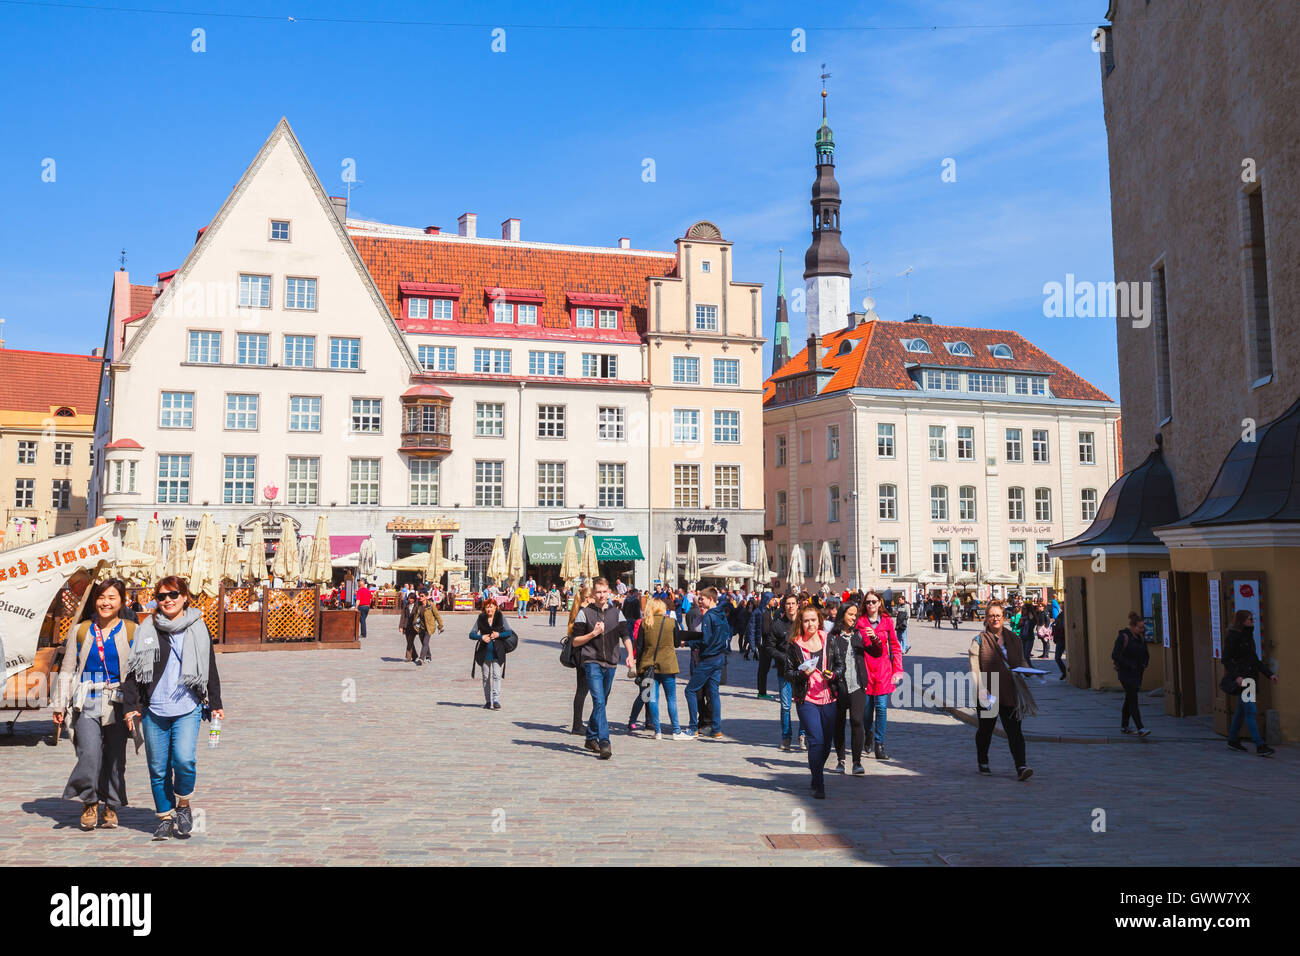 Tallinn, Estland - 2. Mai 2016: Raekoja Plats. Zentralen Rathausplatz der Altstadt Tallinn mit Touristen zu Fuß Stockfoto